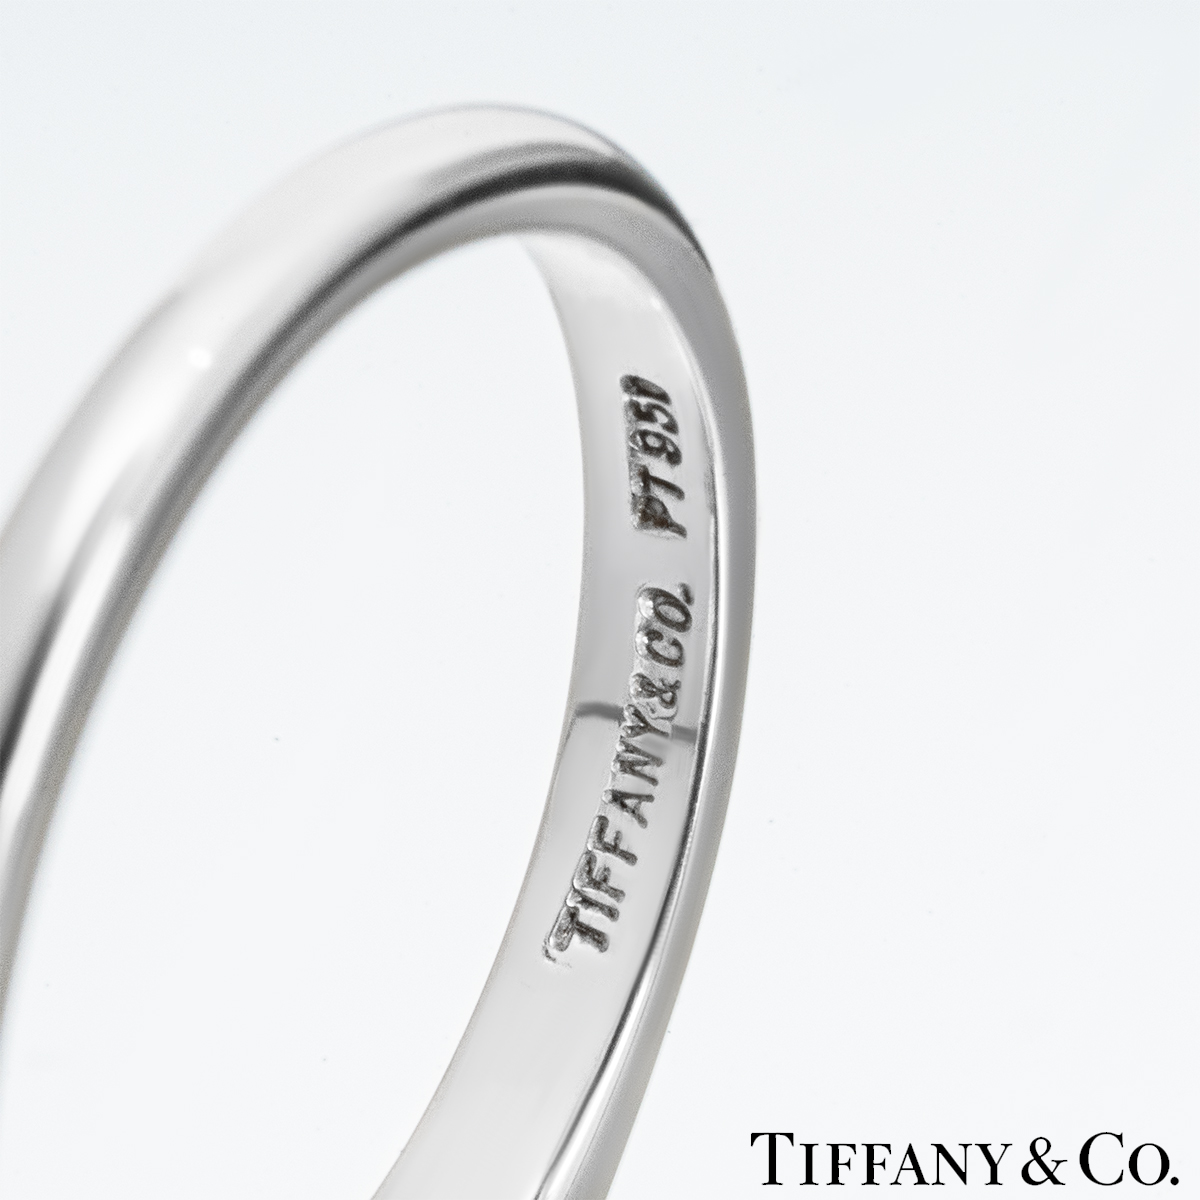 Tiffany & Co. Emerald Cut Diamond Ring 1.59ct E/VS1